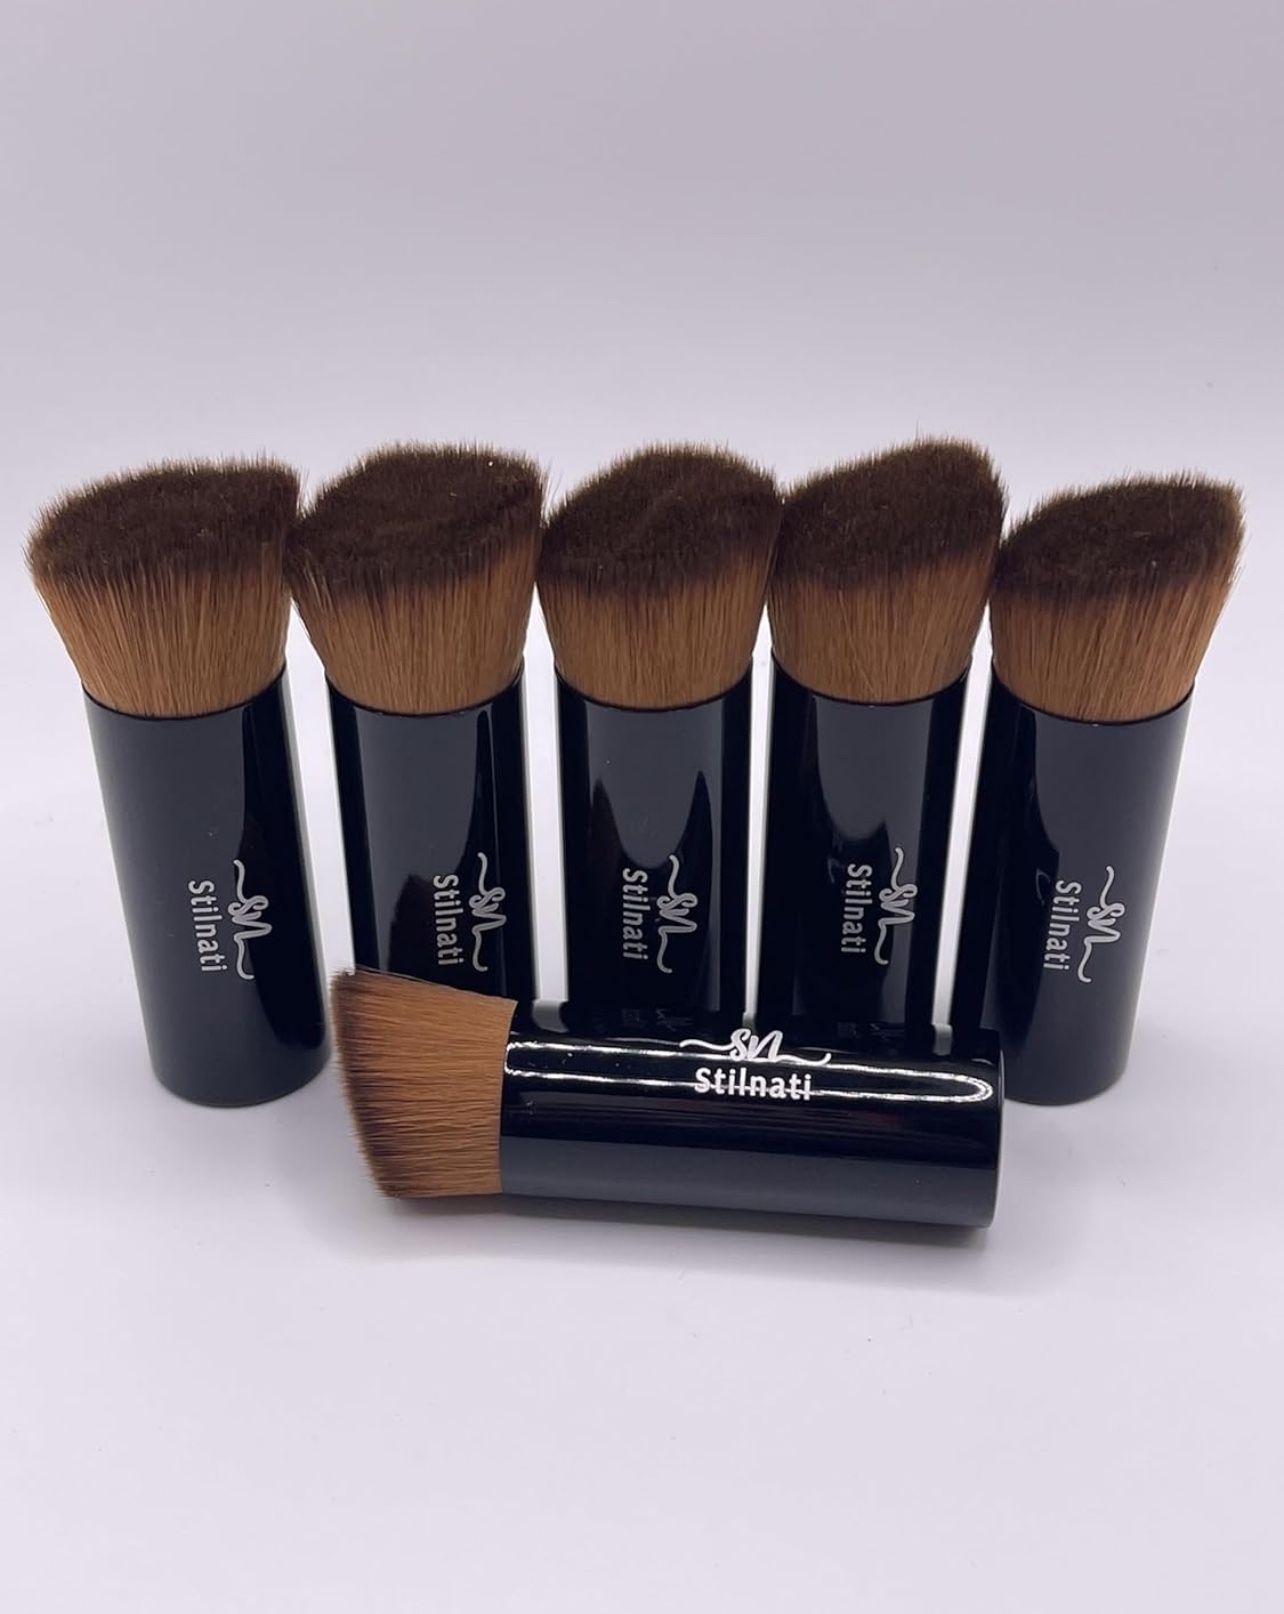 6 Pcs Stilnati Make Up Brush Travel Size Foundation Makeup Brushes, Shades Brushes, Liquid Foundation Brushes 